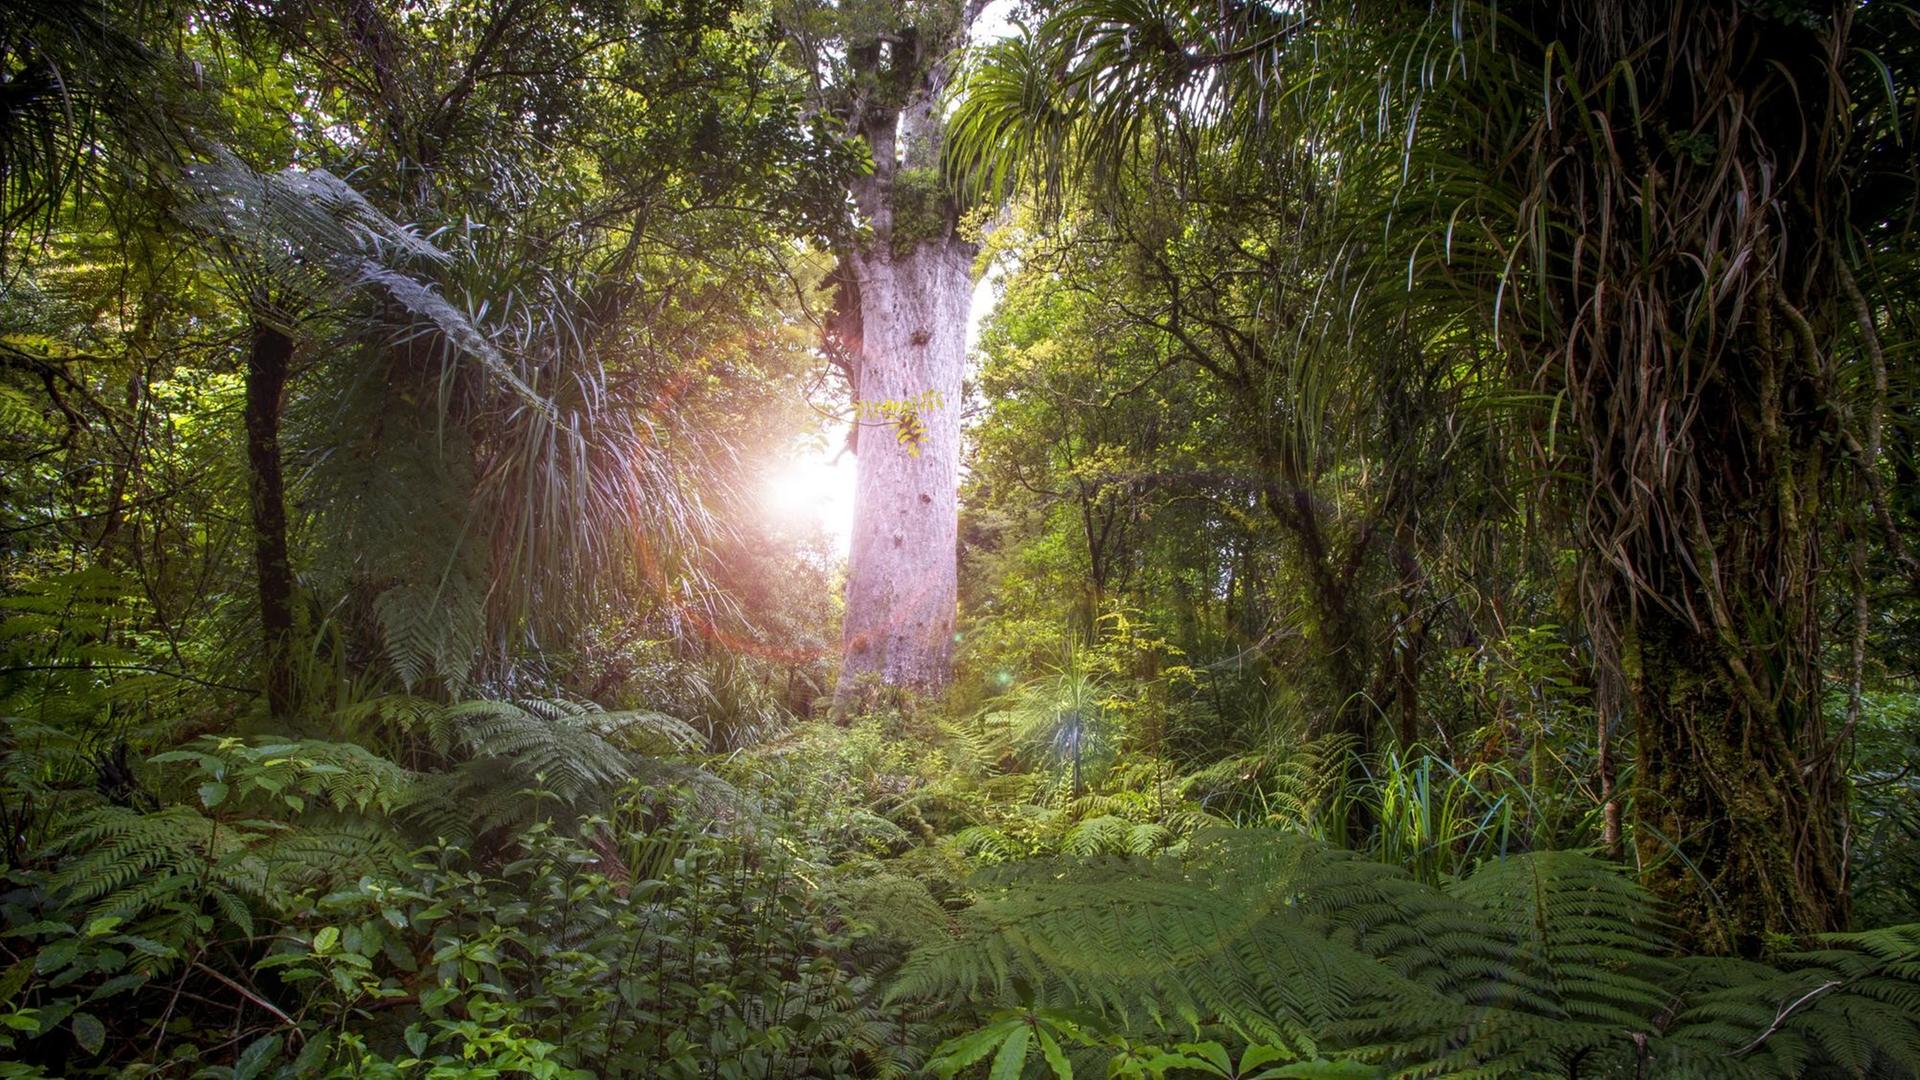 Stimmungsvolles Bild aus dem Urwald in Neuseeland